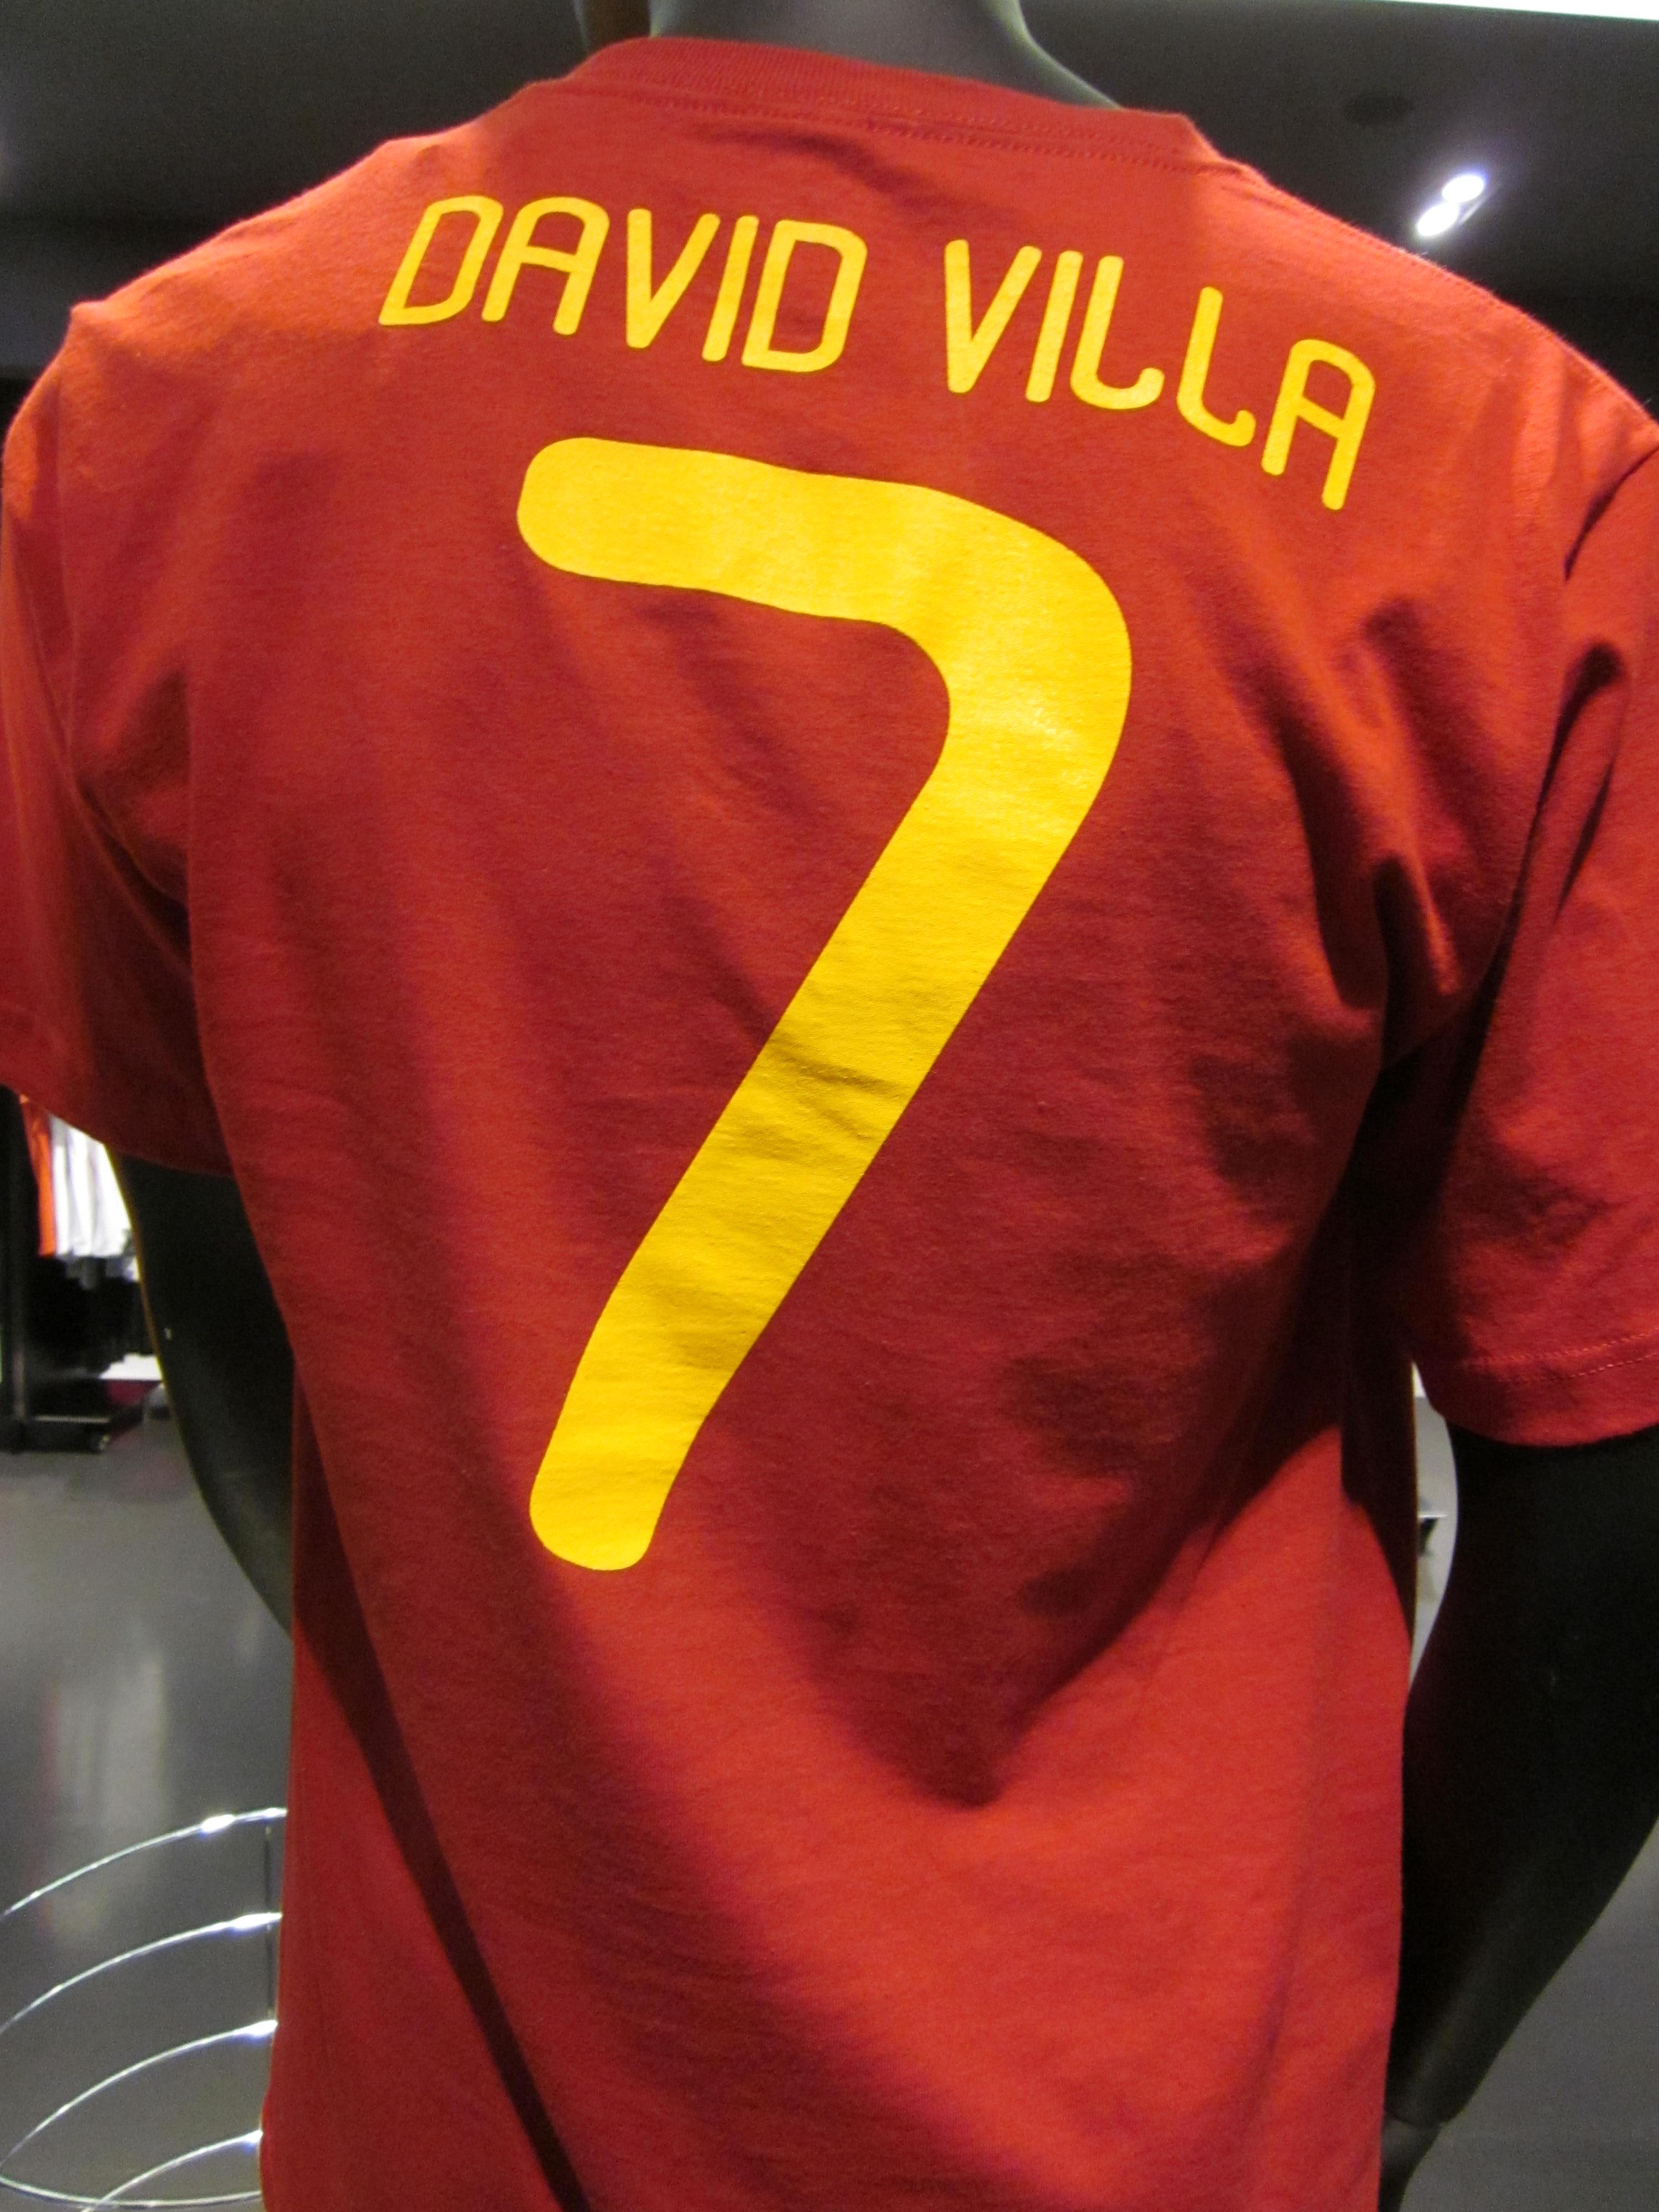 david villa jersey number